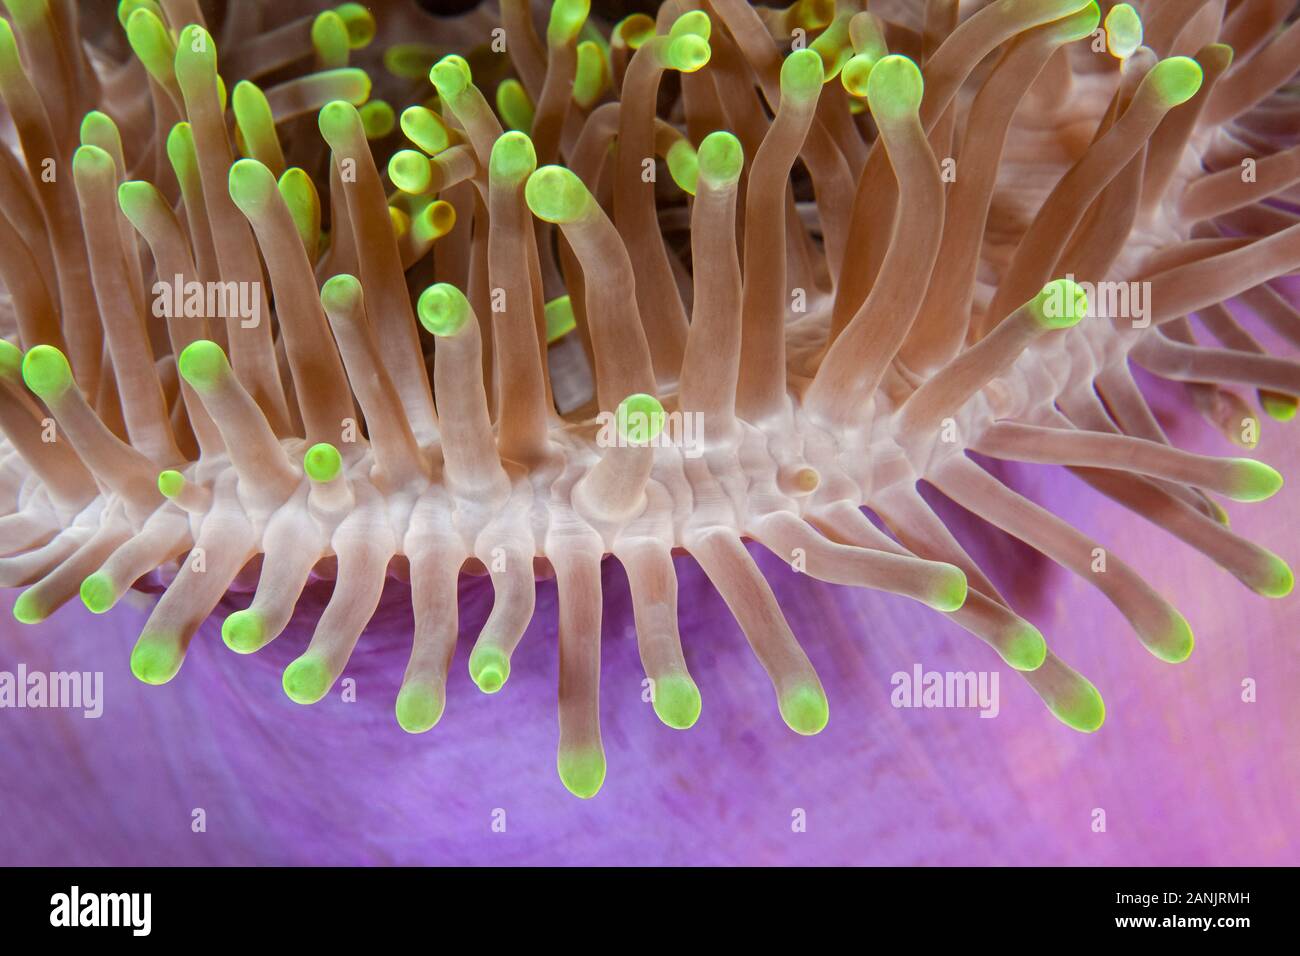 Dettaglio del magnifico mare anemone, Heteractis magnifica, Maldive, Oceano Indiano Foto Stock